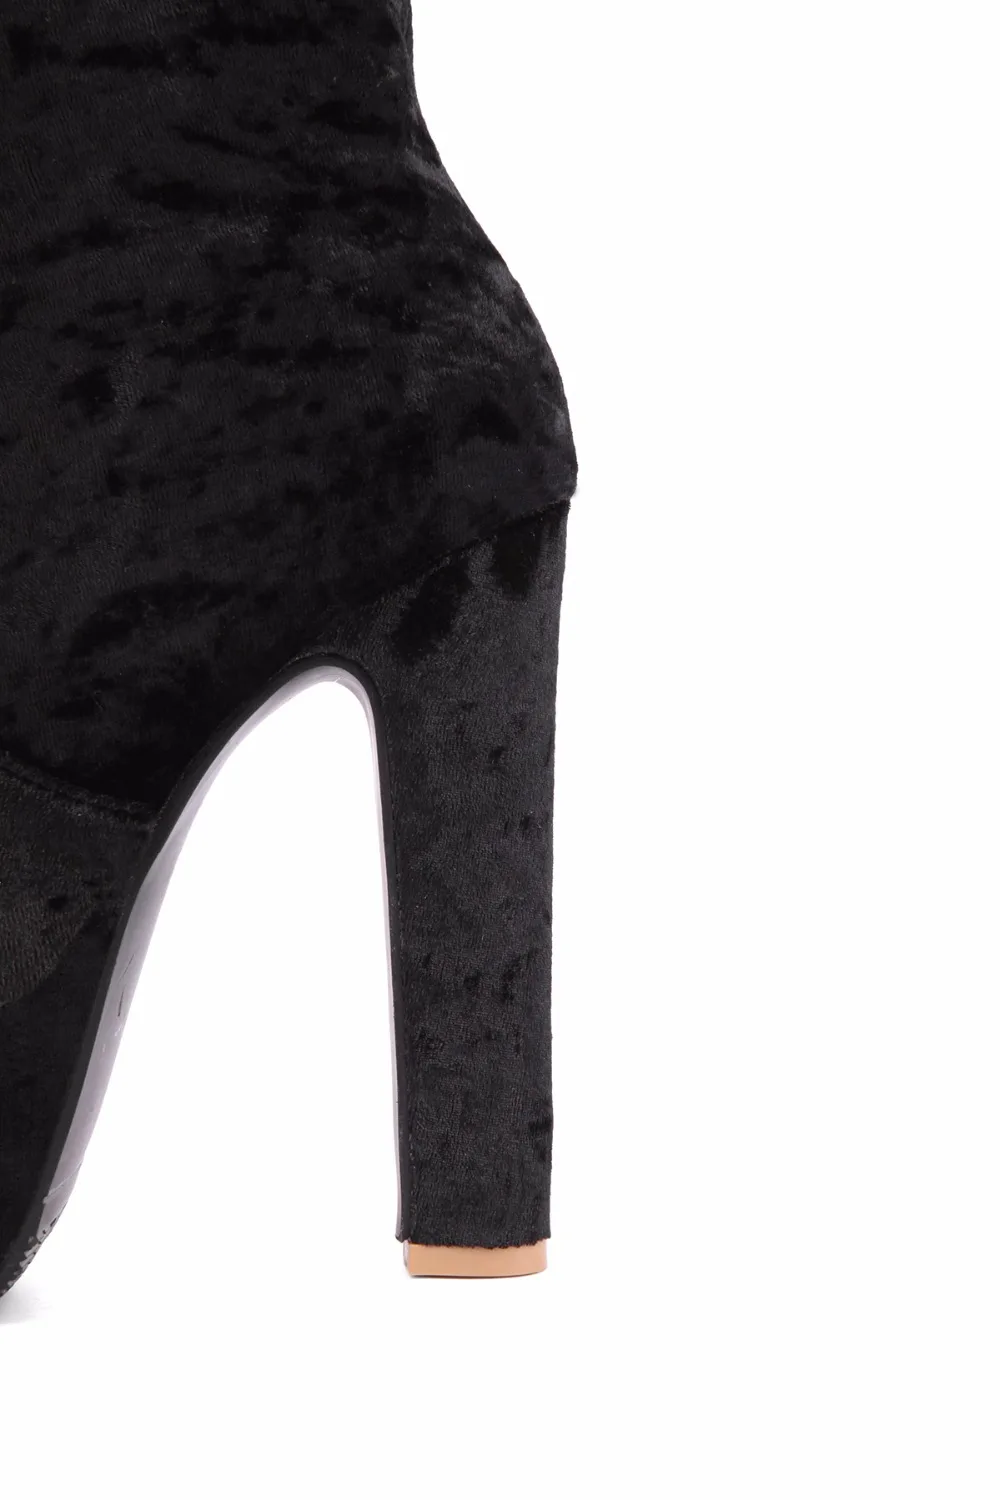 Arden Furtado/ г. Новая стильная женская обувь на платформе и высоком каблуке 14 см, модные сапоги до колена Большие размеры 40-48, маленький размер 31